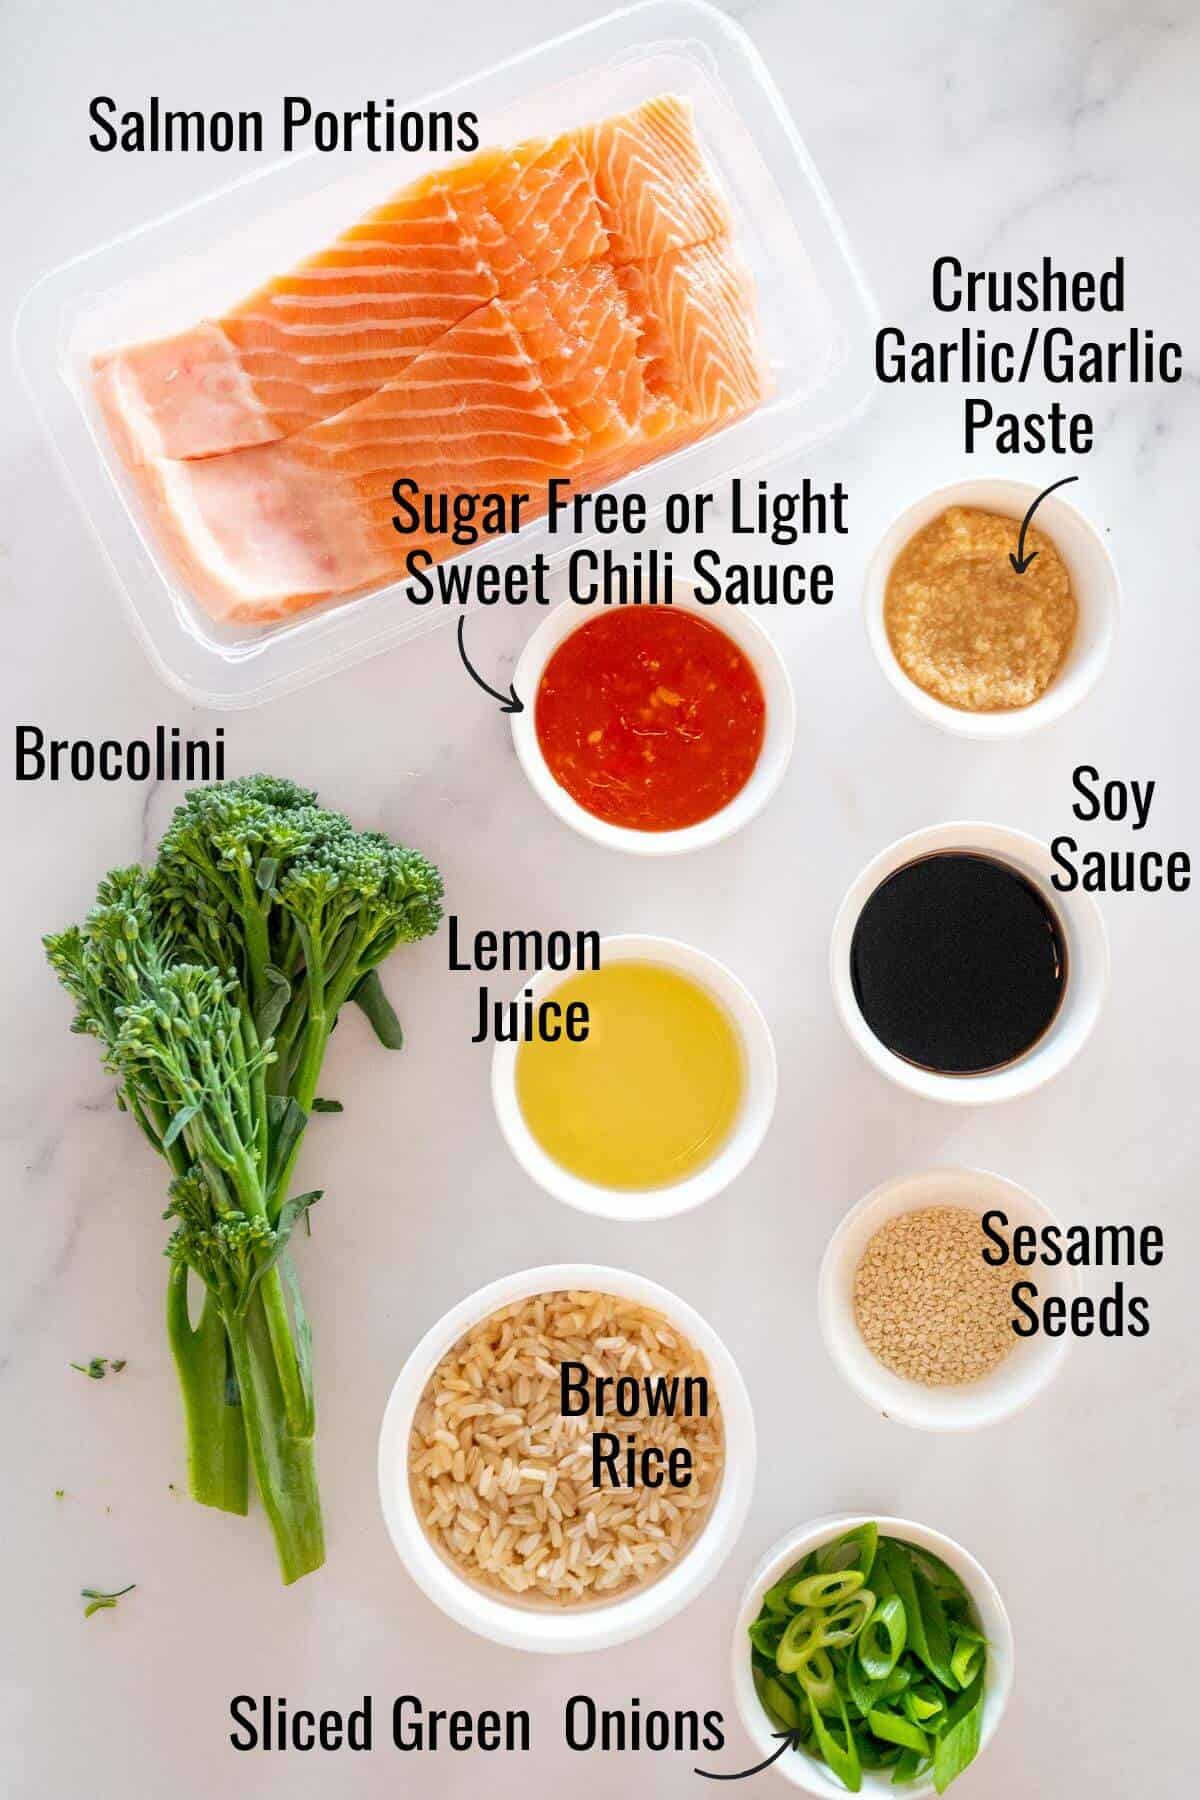 Ingredients to make sweet chili salmon